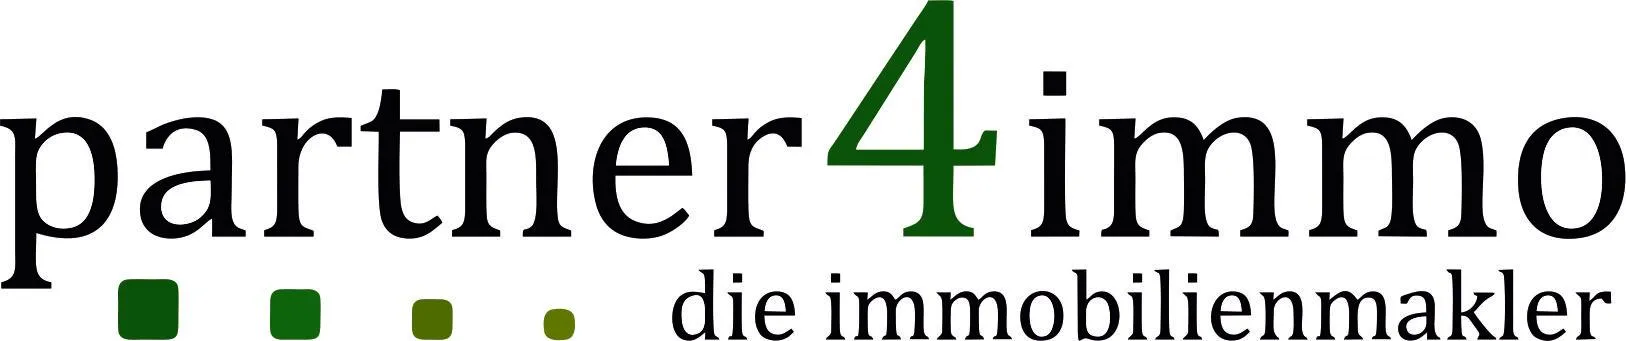 Makler partner4immo gmbh logo